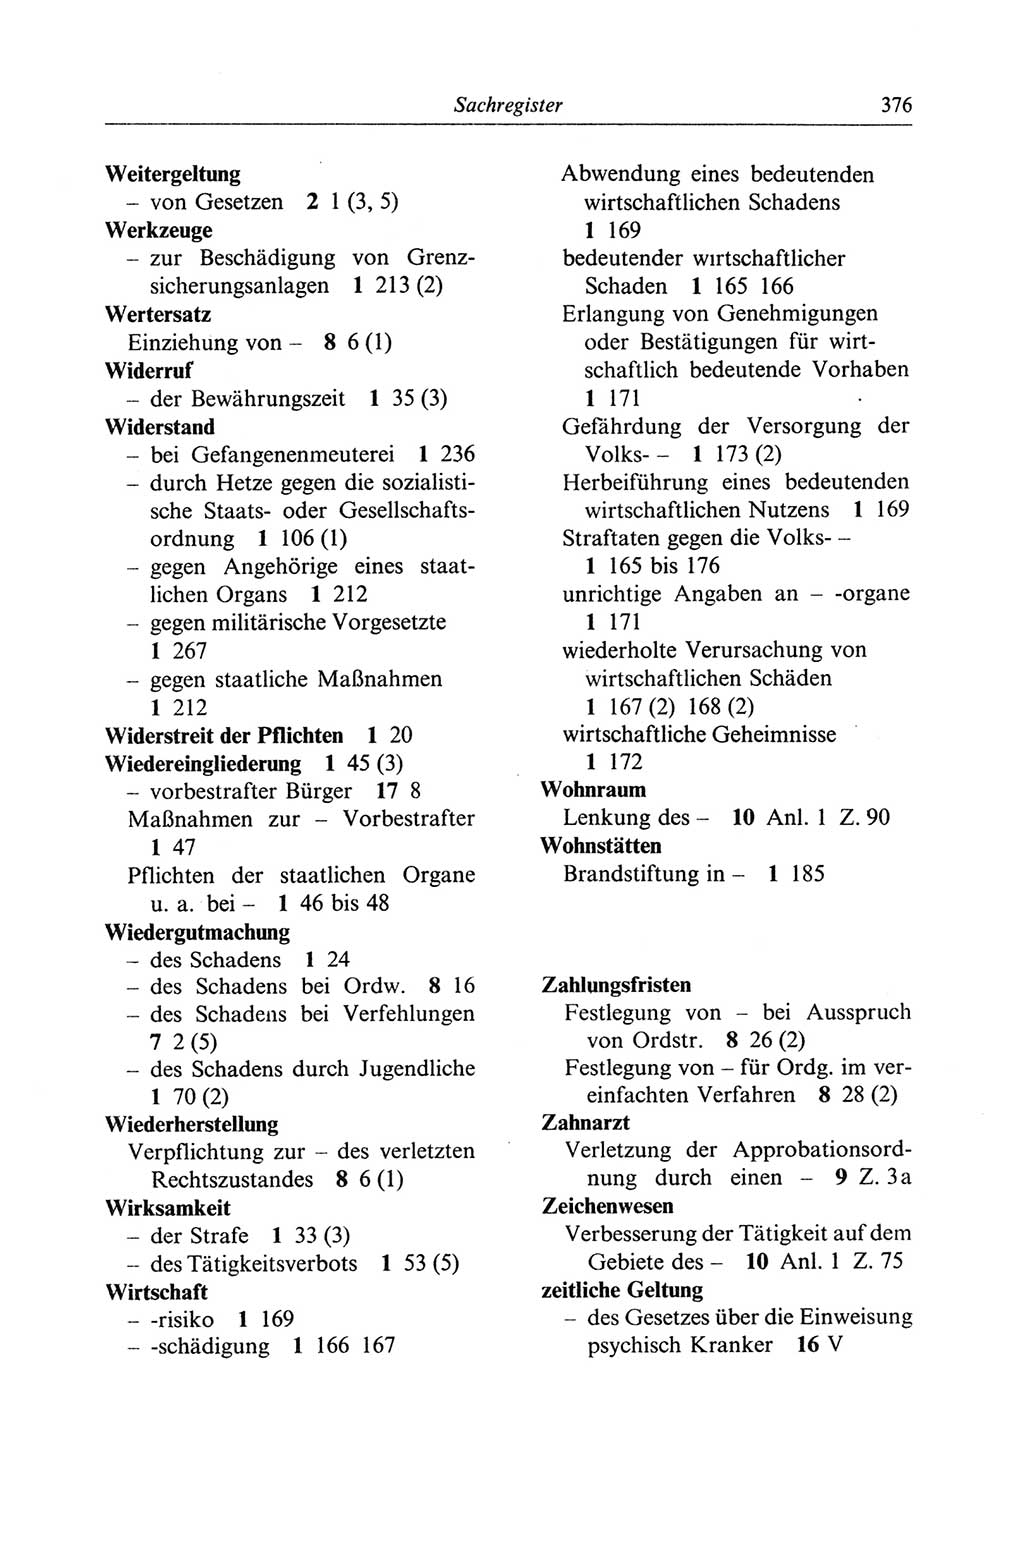 Strafgesetzbuch (StGB) der Deutschen Demokratischen Republik (DDR) und angrenzende Gesetze und Bestimmungen 1968, Seite 376 (StGB Ges. Best. DDR 1968, S. 376)